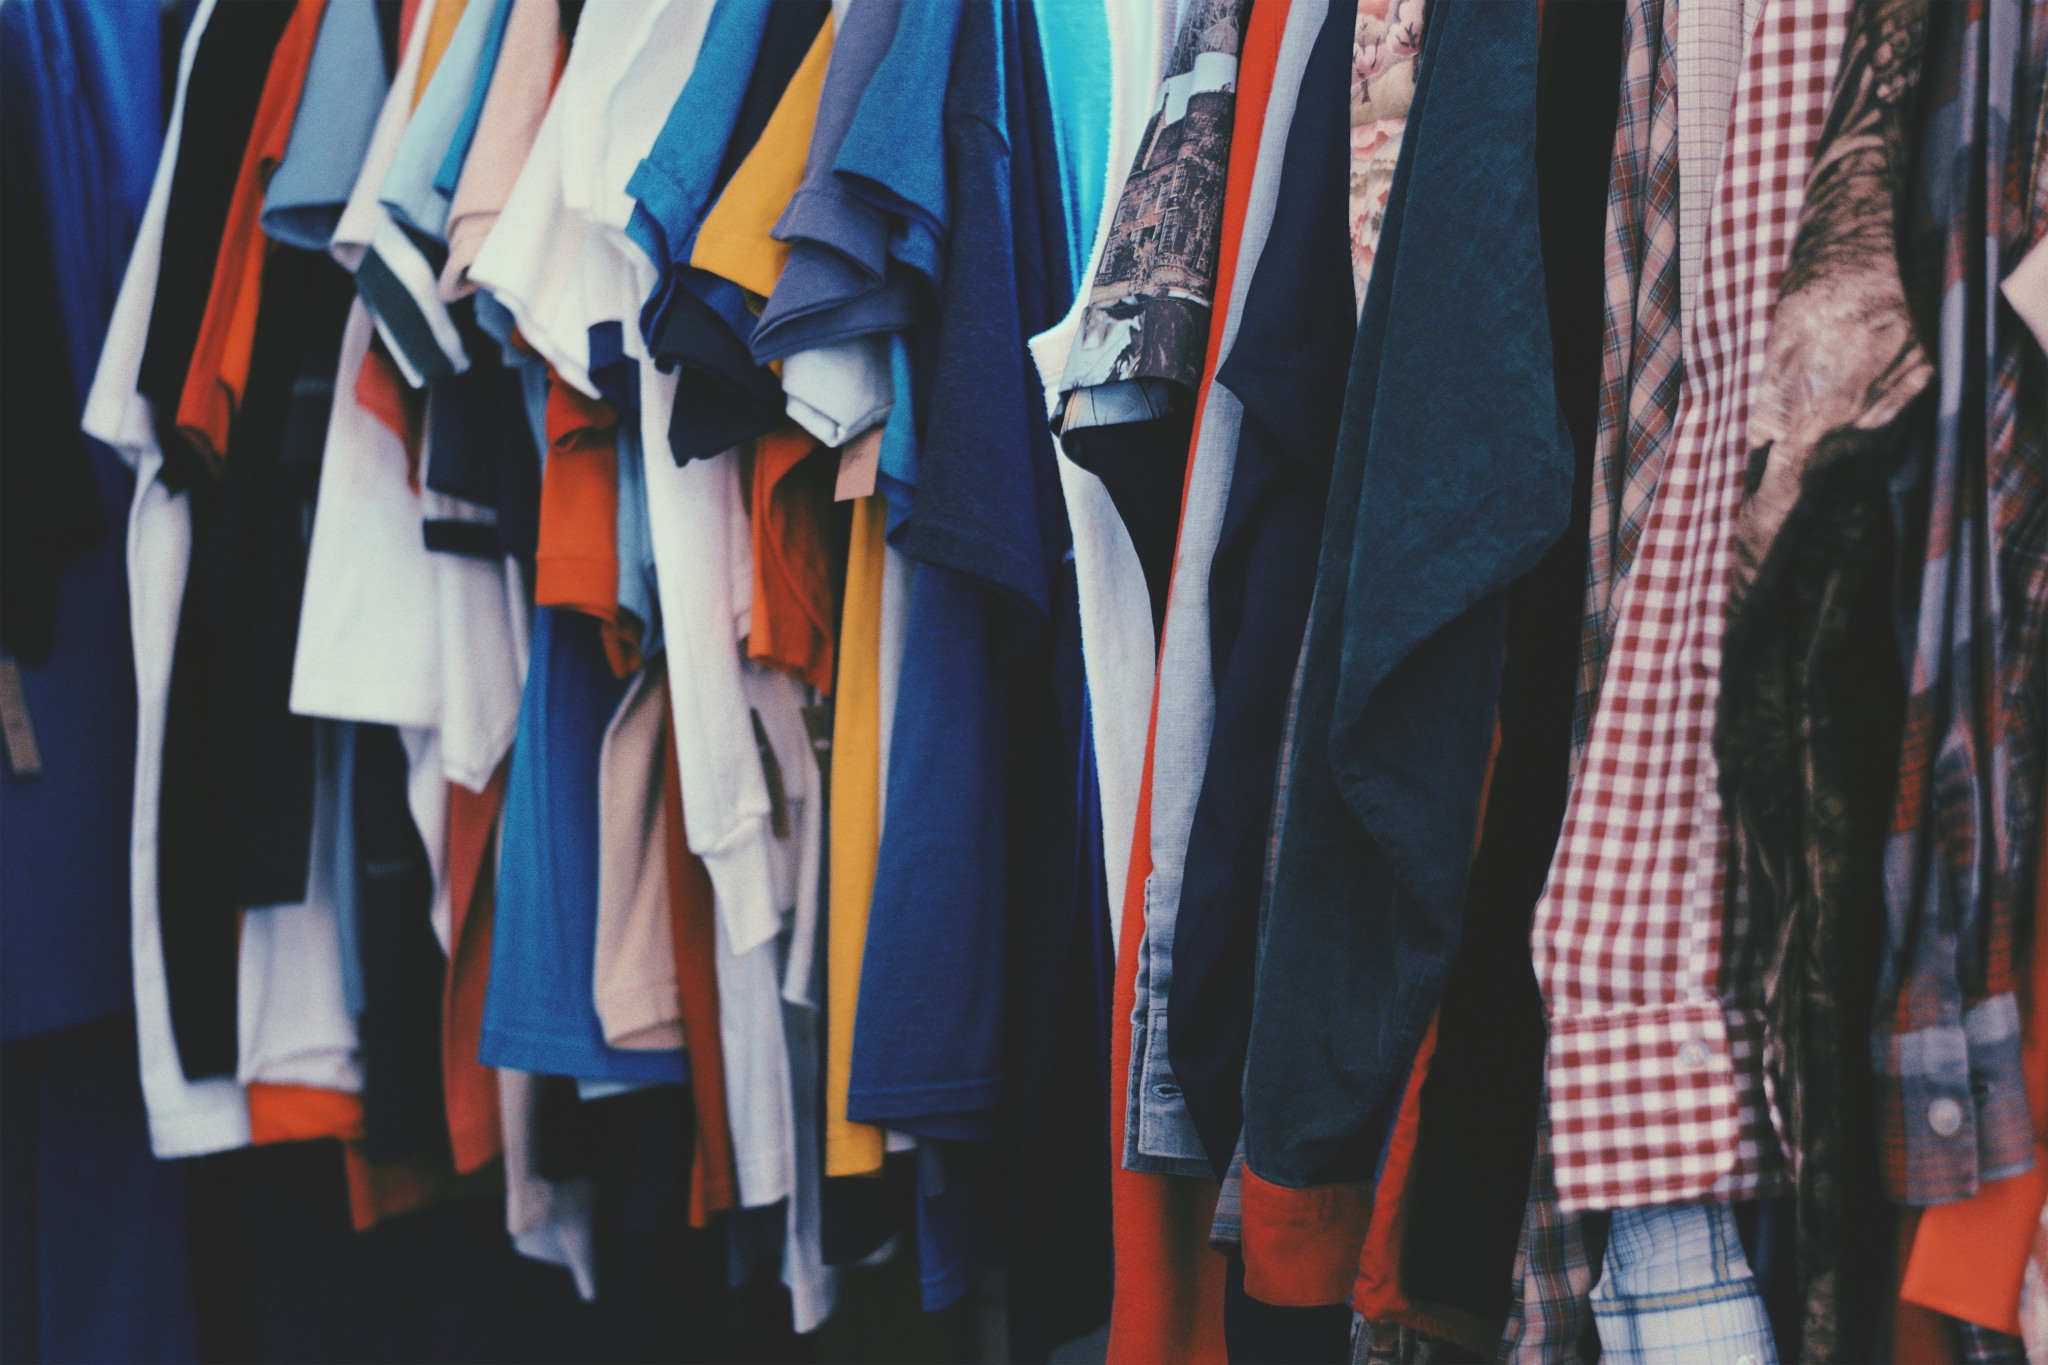 В Саранске студент расширил свой гардероб за счет краденой одежды